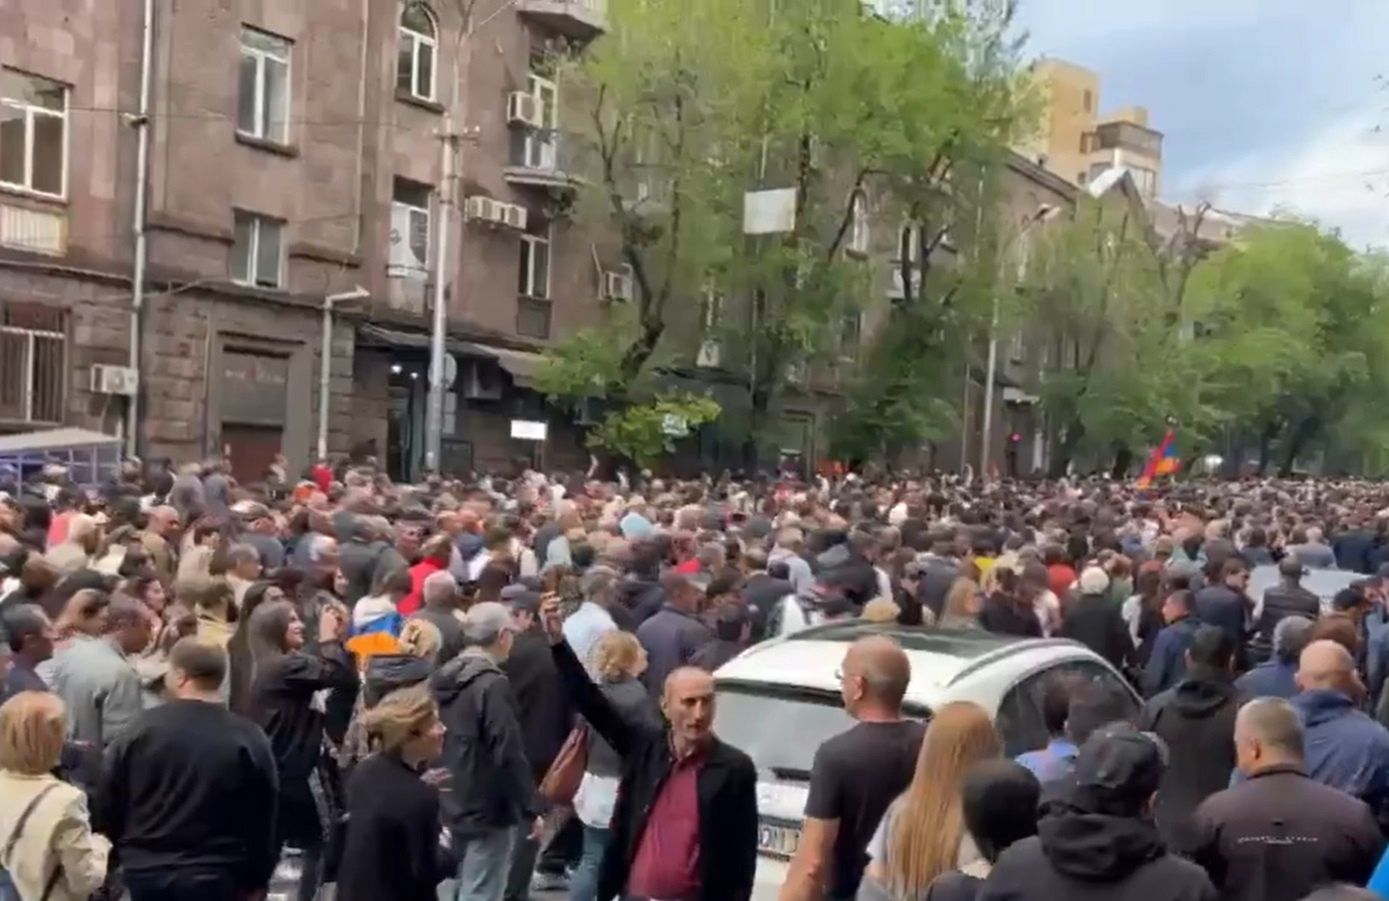 Morze ludzi na ulicach Armenii. Domagają się dymisji rządu